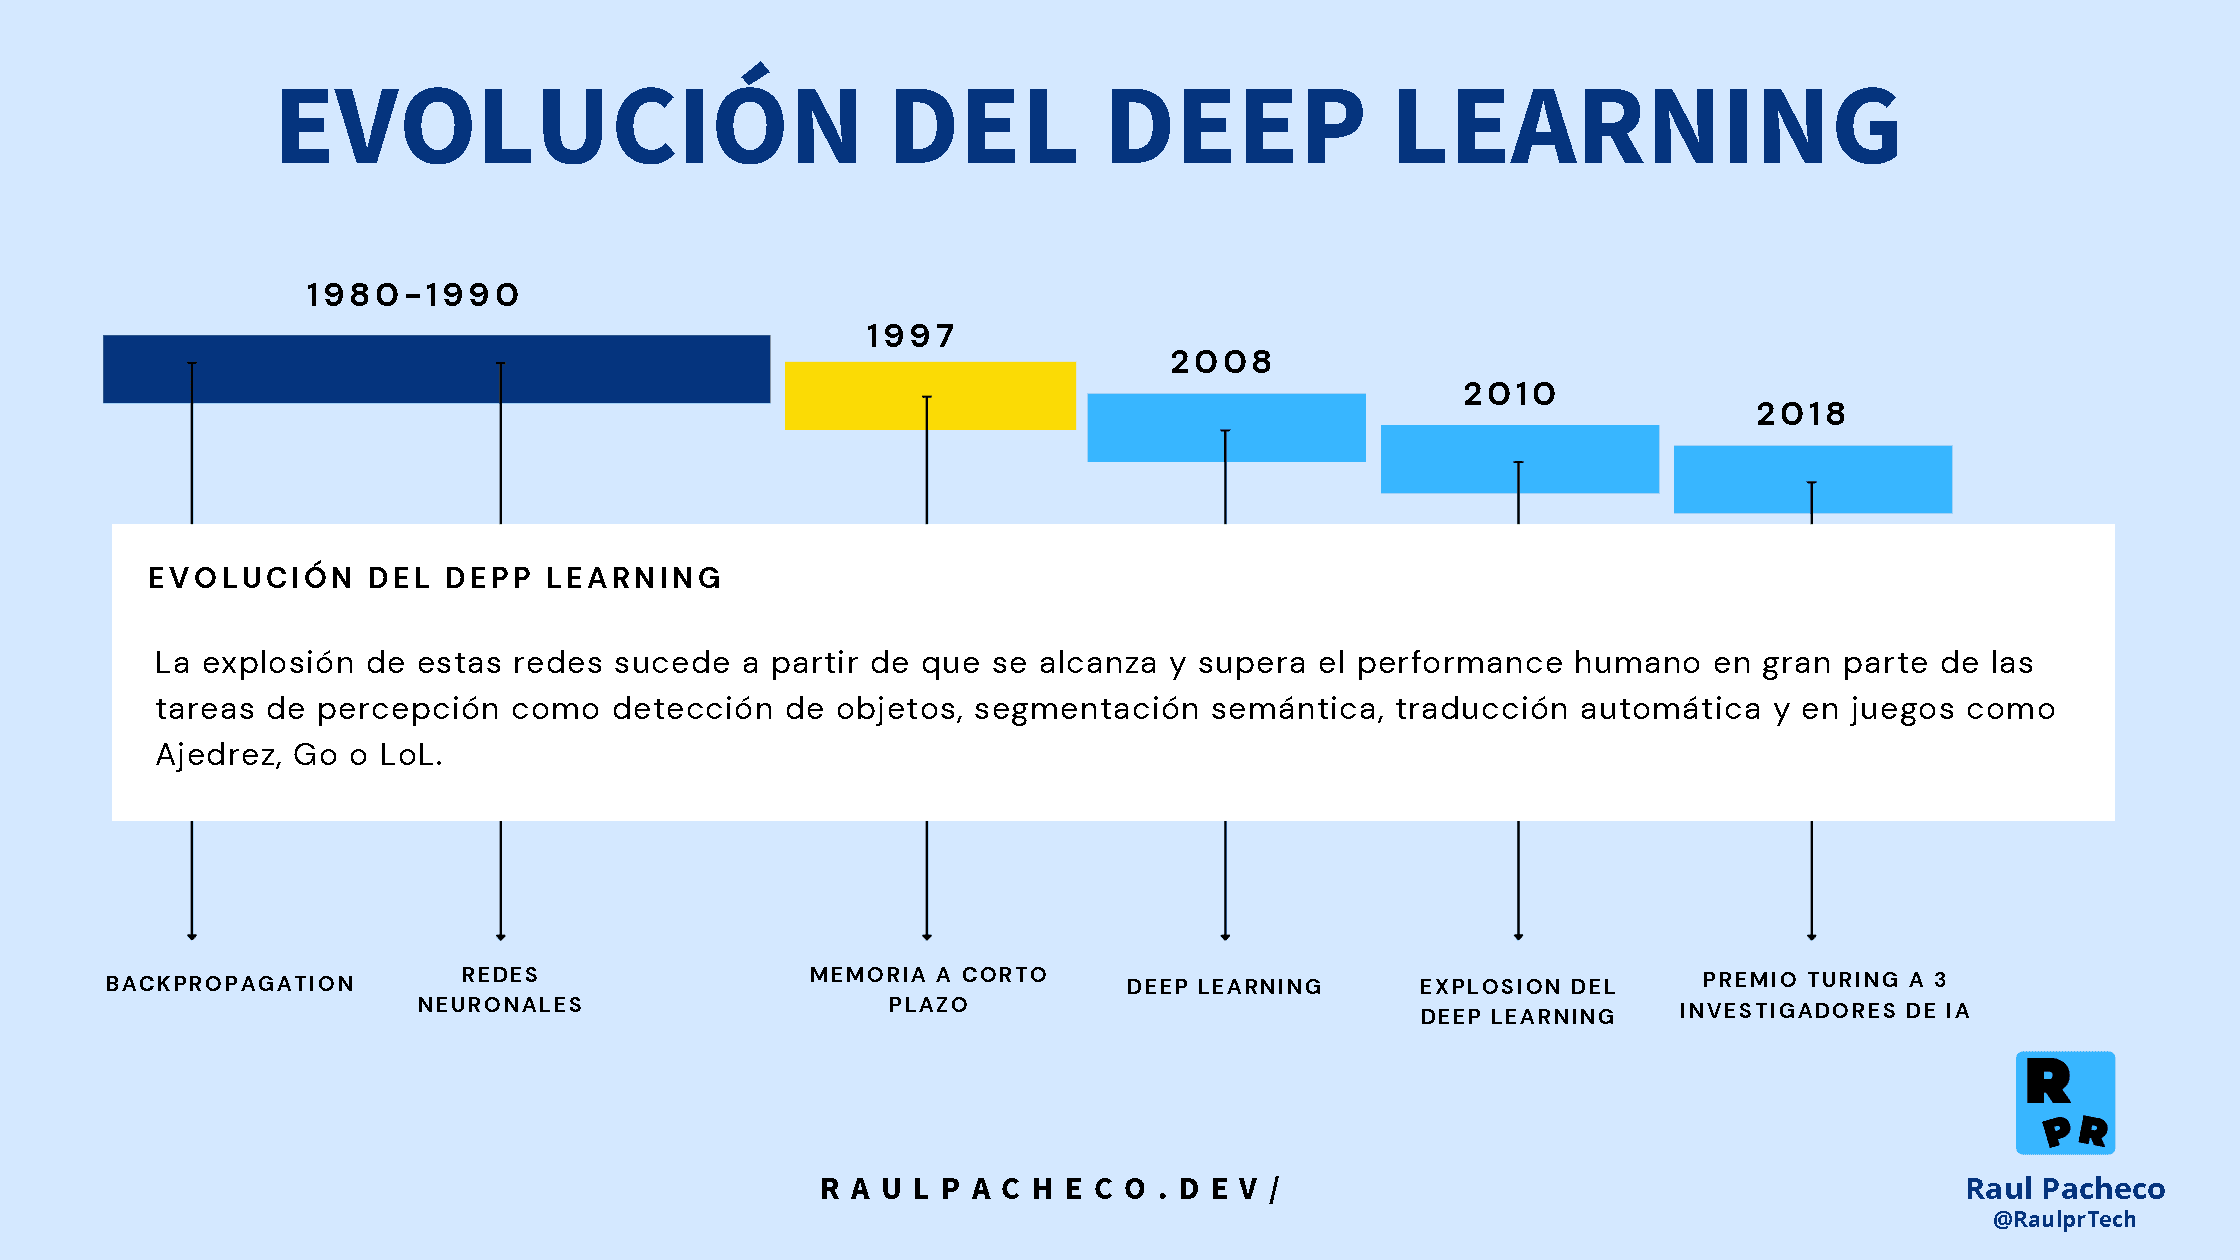 Historia del Deep Learning - Linea de tiempo de algunos eventos importantes en la evolución del Deep Learning